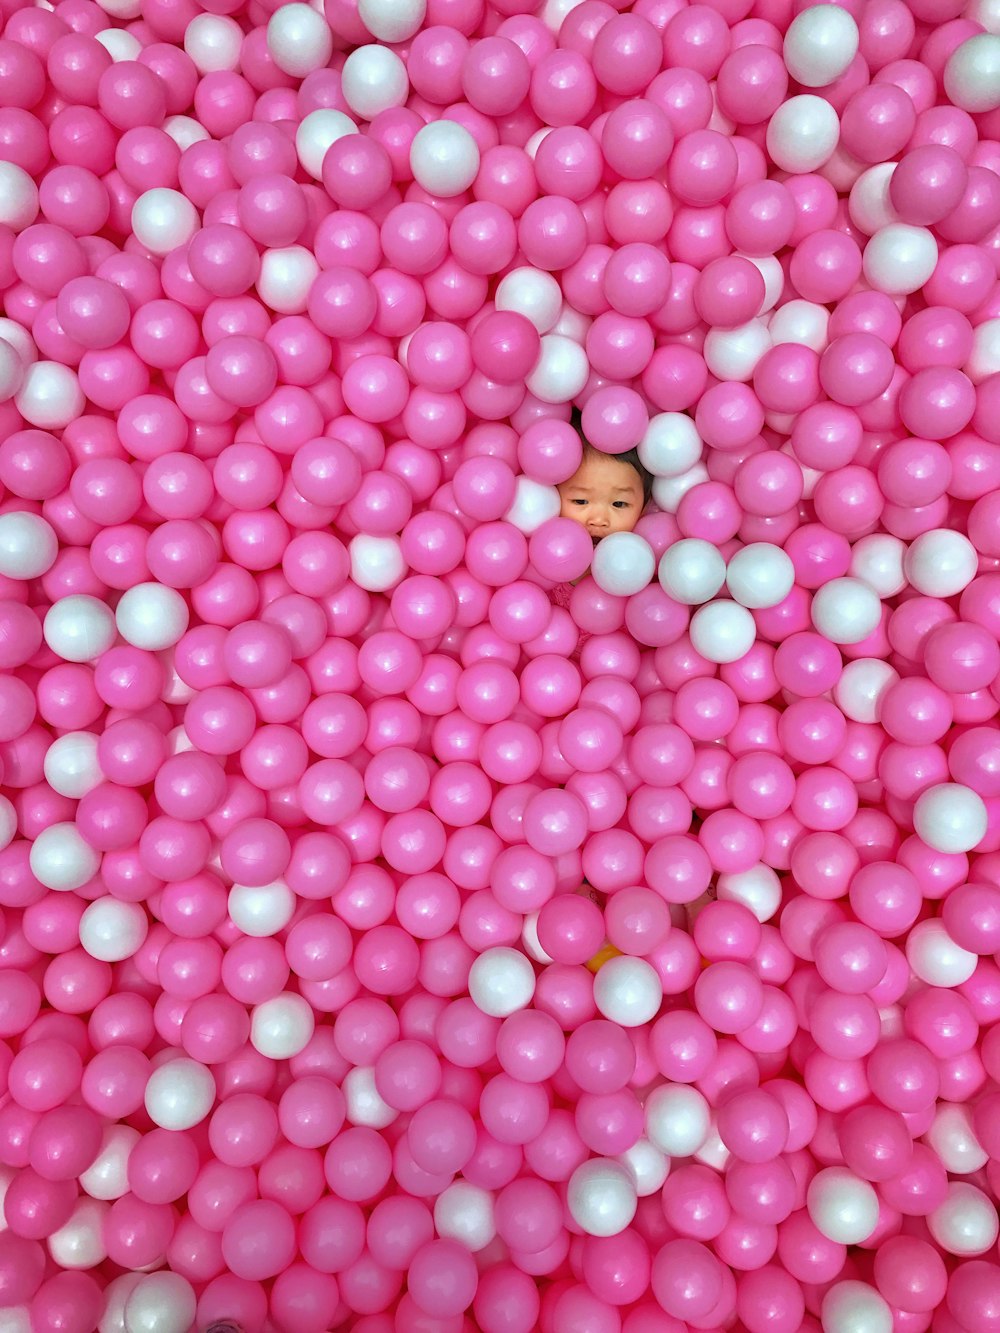 niño pequeño en la piscina de bolas rosa y blanca